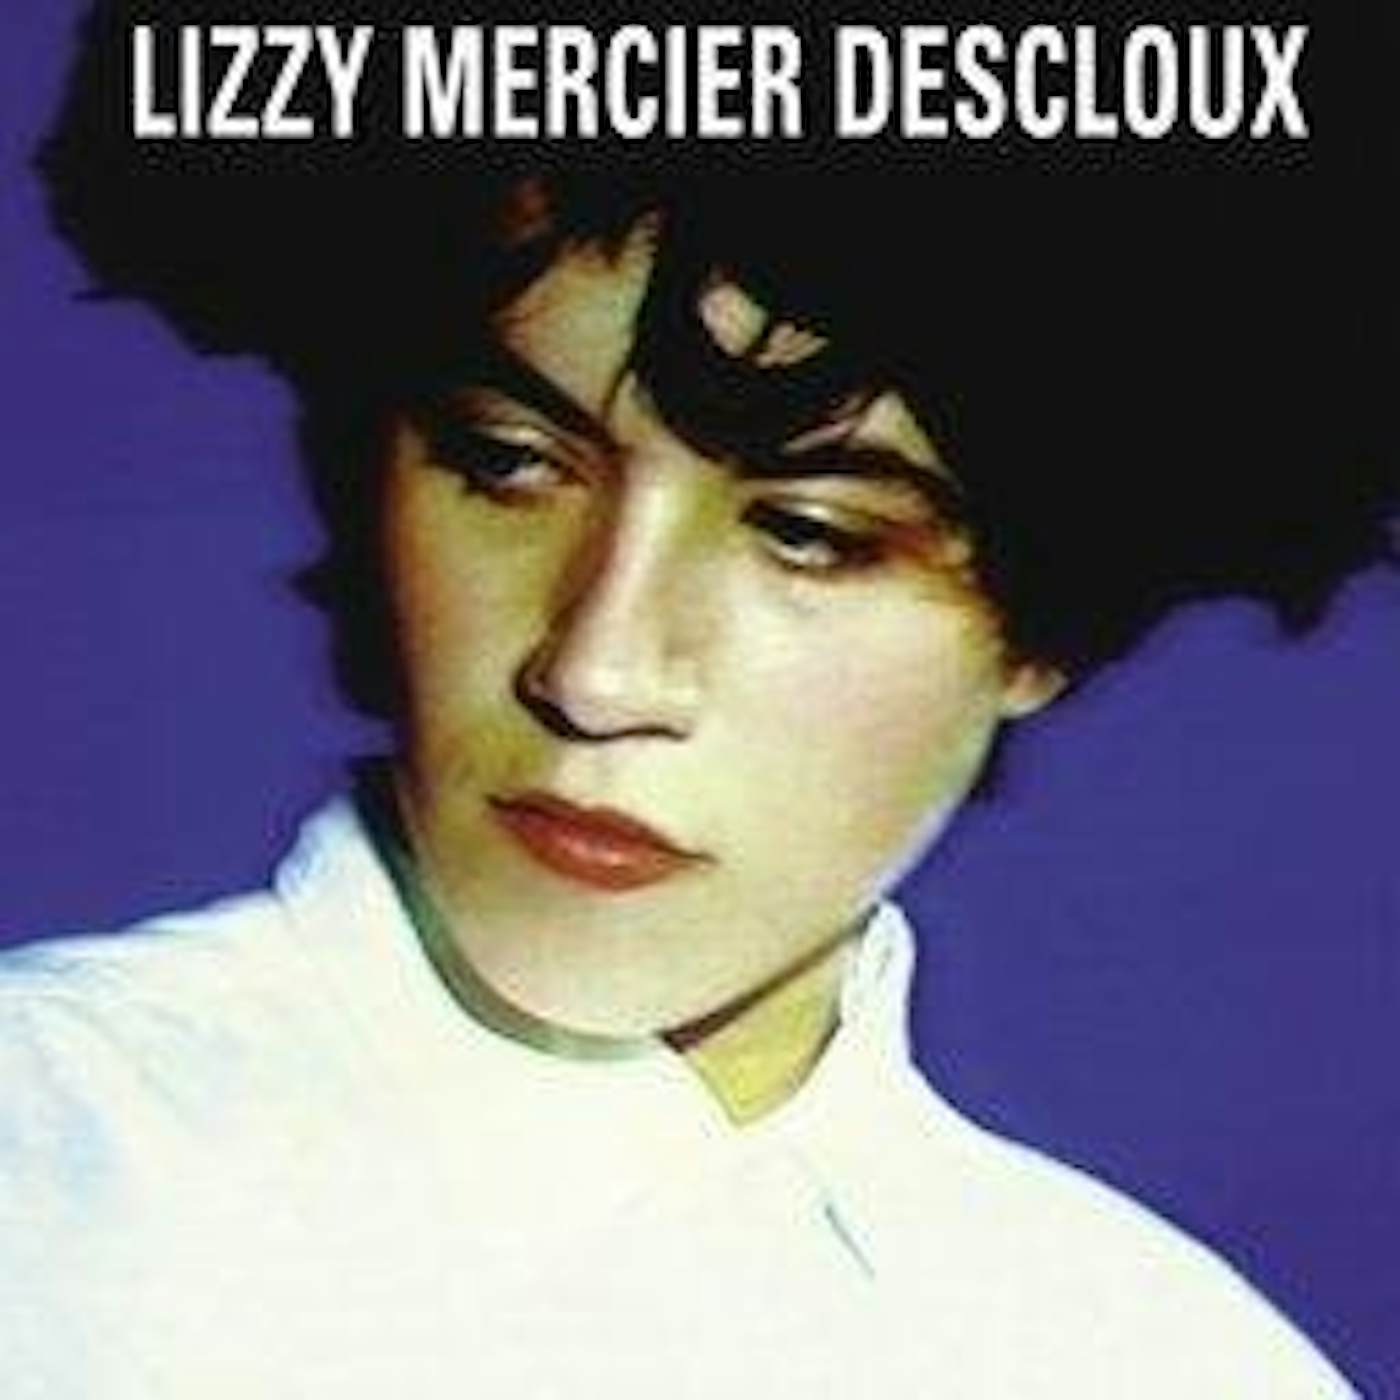 Lizzy Mercier Descloux MISSION IMPOSSIBLE Vinyl Record